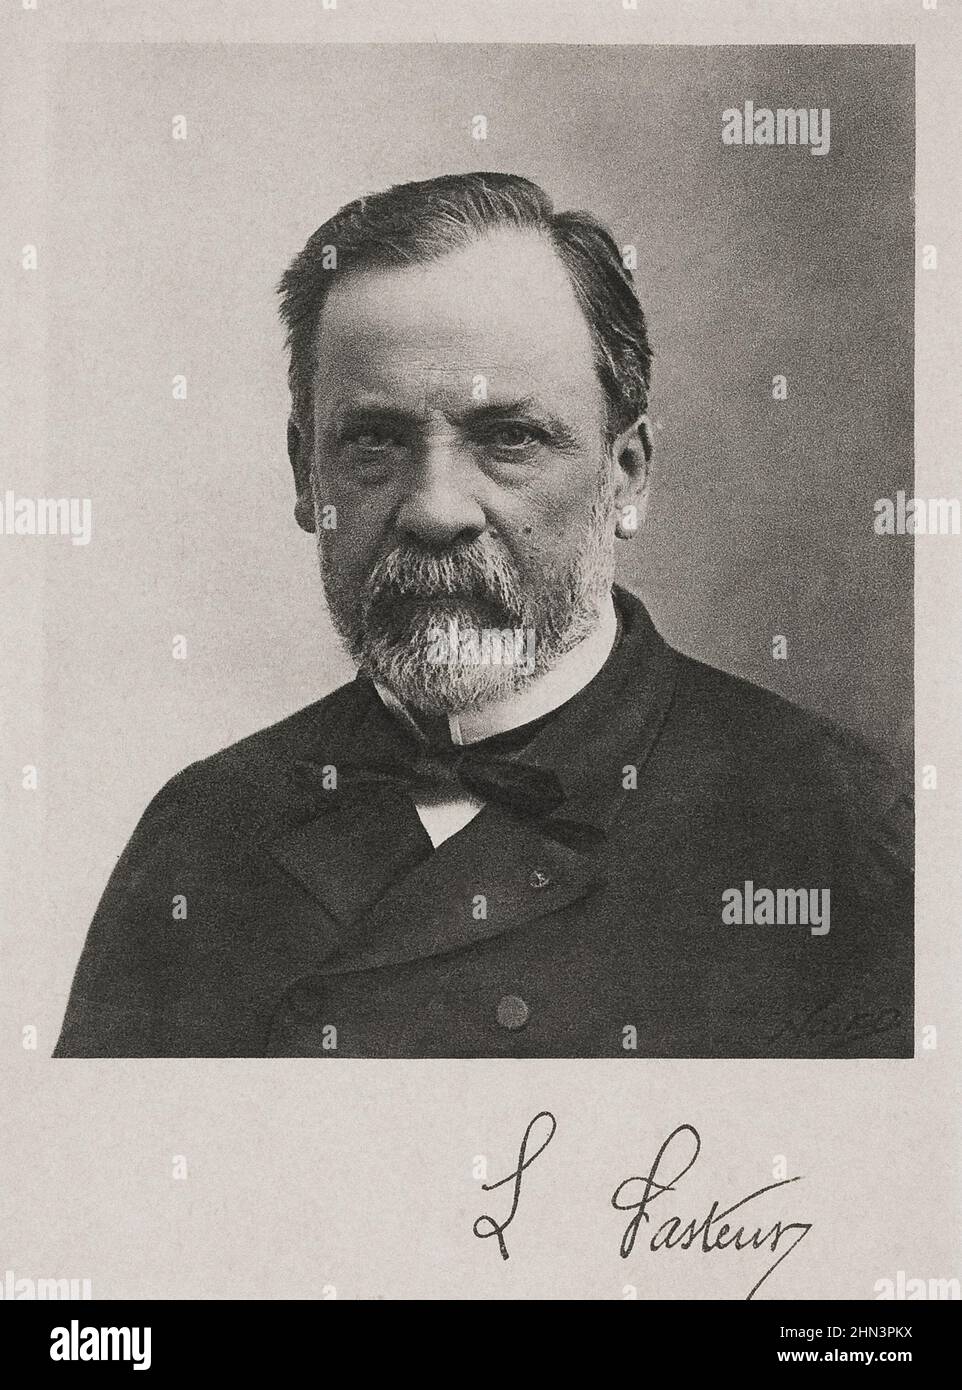 Retrato de Louis Pasteur. Louis Pasteur (1822 – 1895) fue un químico y microbiólogo francés conocido por sus descubrimientos de los principios de vacci Foto de stock